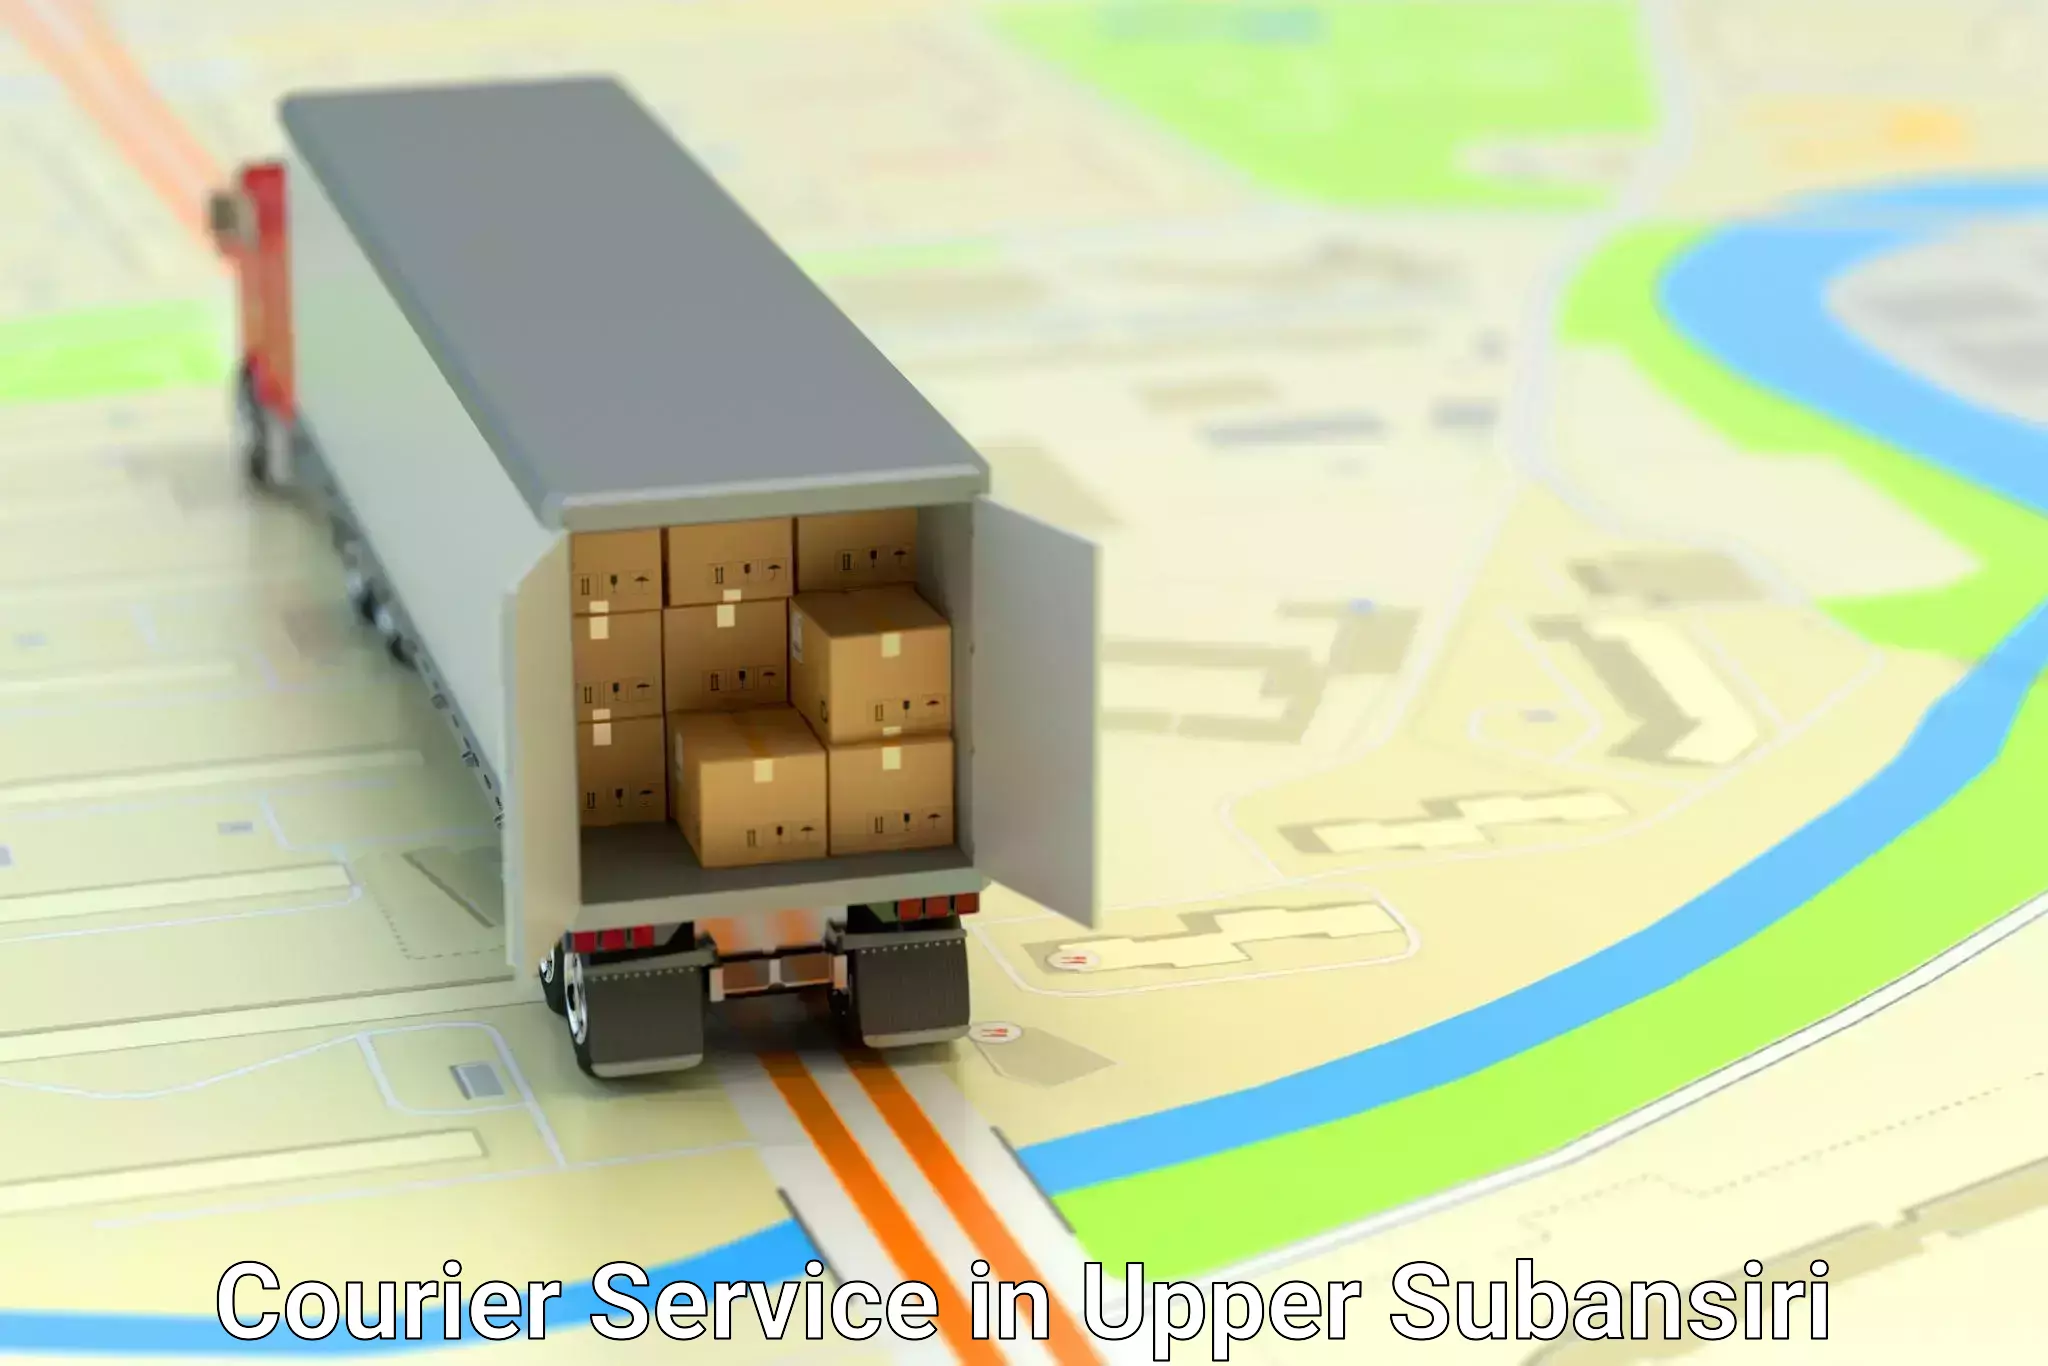 Efficient freight service in Upper Subansiri